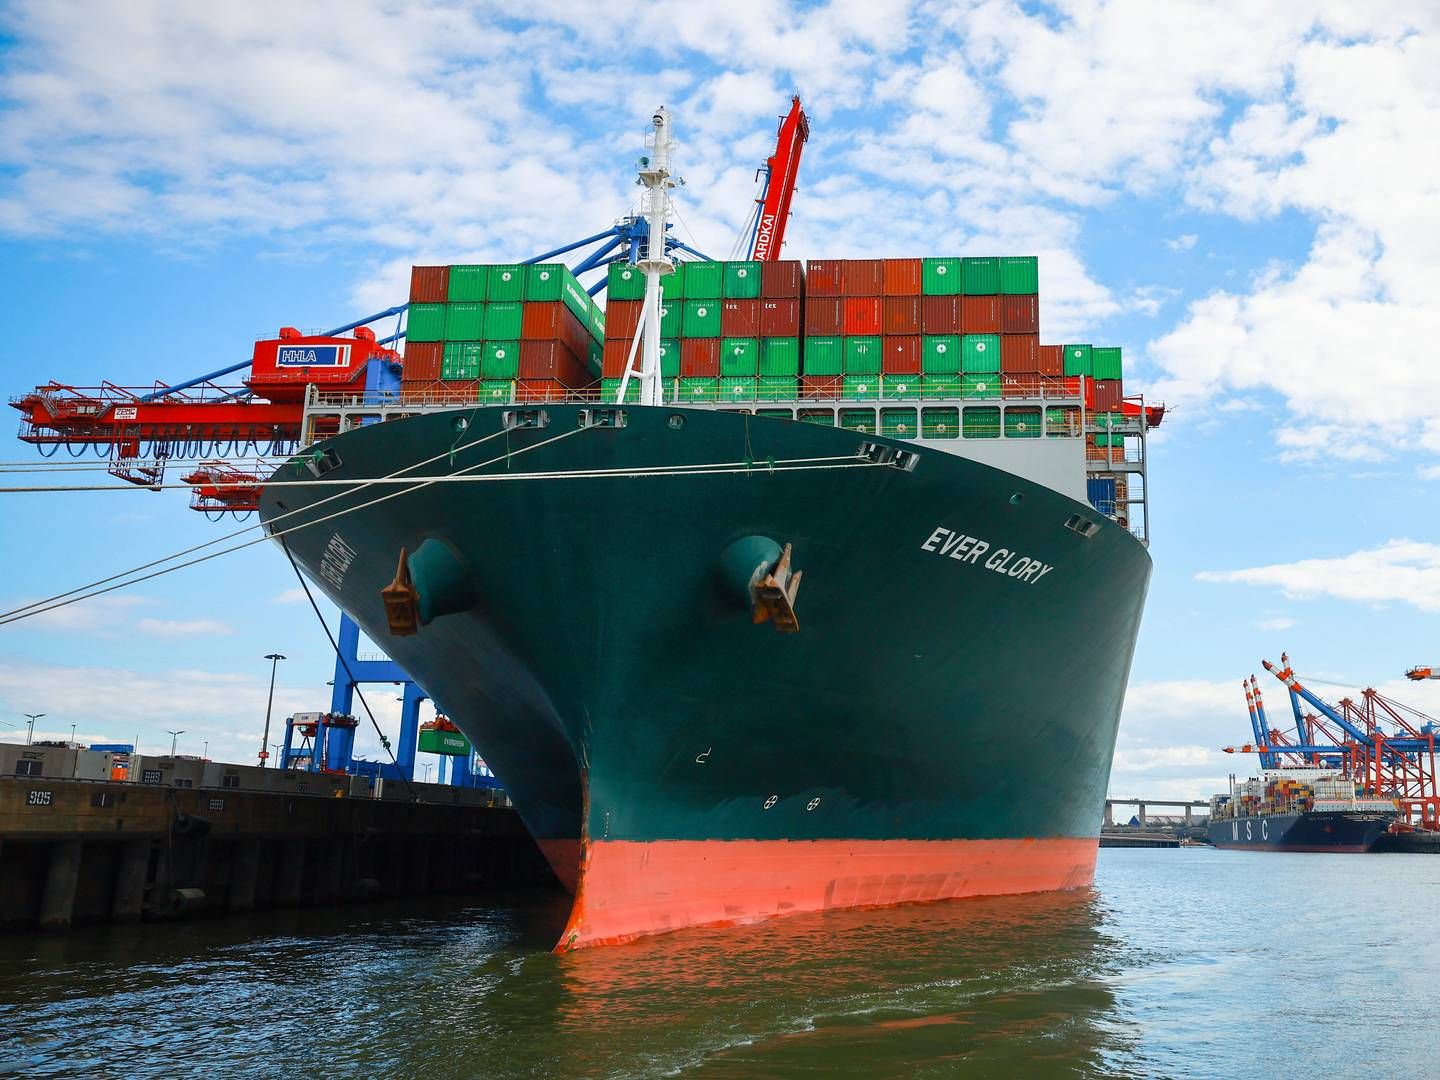 Andre containerrederier har tidligere meldt ud, at de vil pålægge ekstragebyrer, men de har ikke meldt endelige priser ud endnu. | Foto: Christian Charisius/AP/Ritzau Scanpix